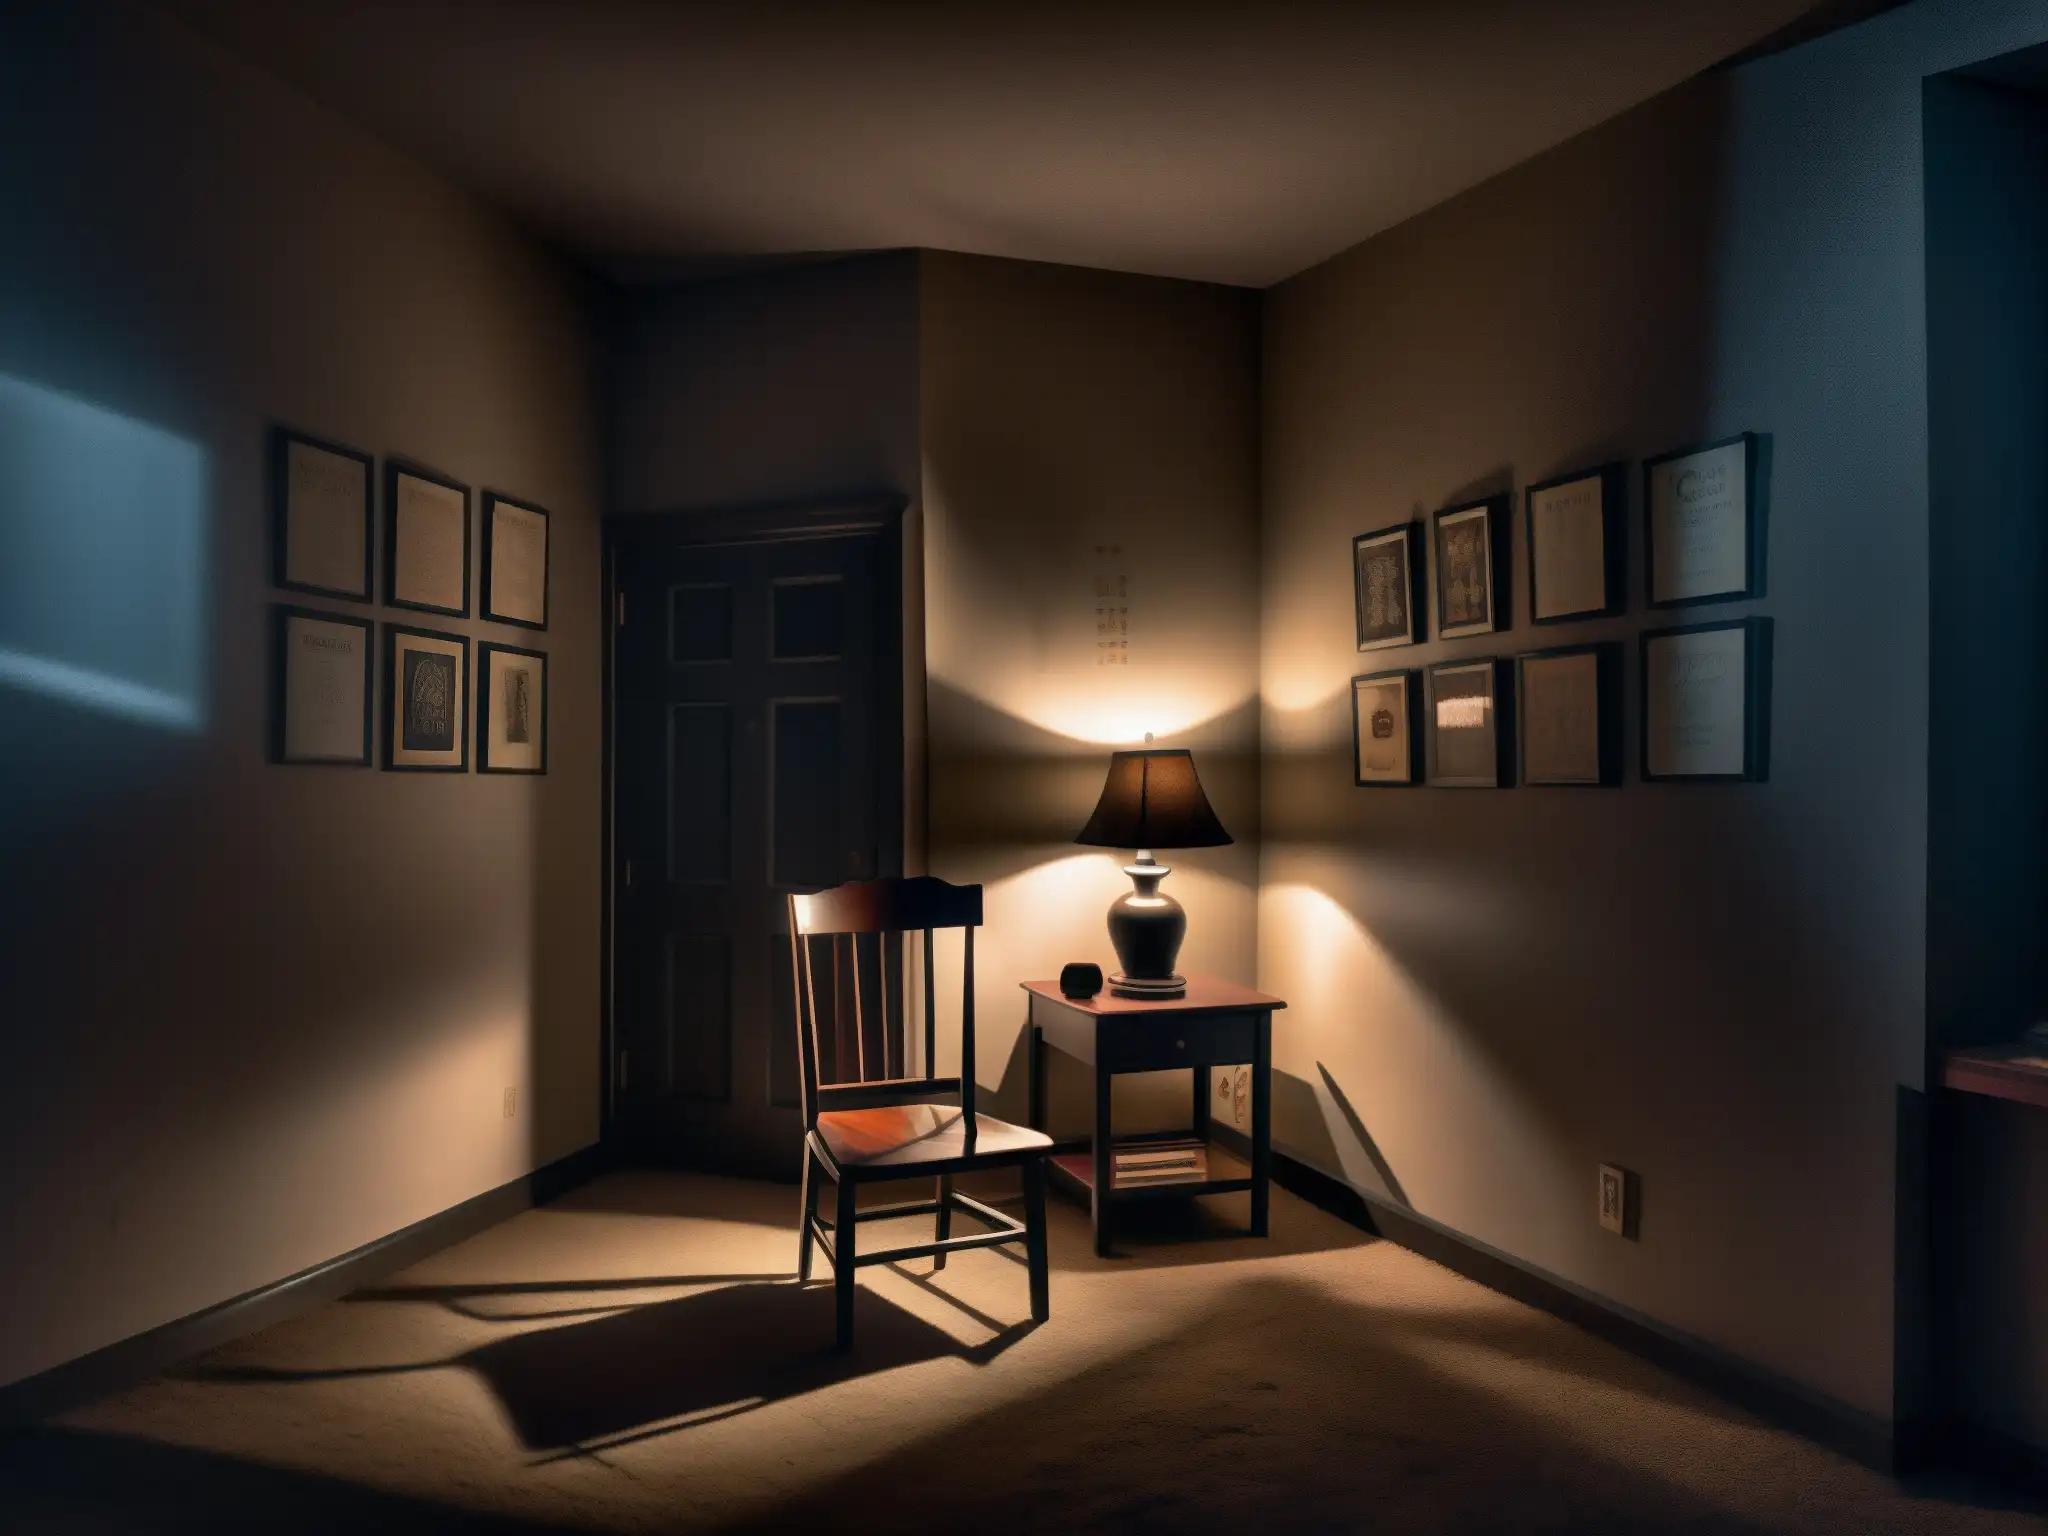 El impacto psicológico del fenómeno Creepypasta se refleja en una habitación tenebrosa con dibujos inquietantes y una silla solitaria